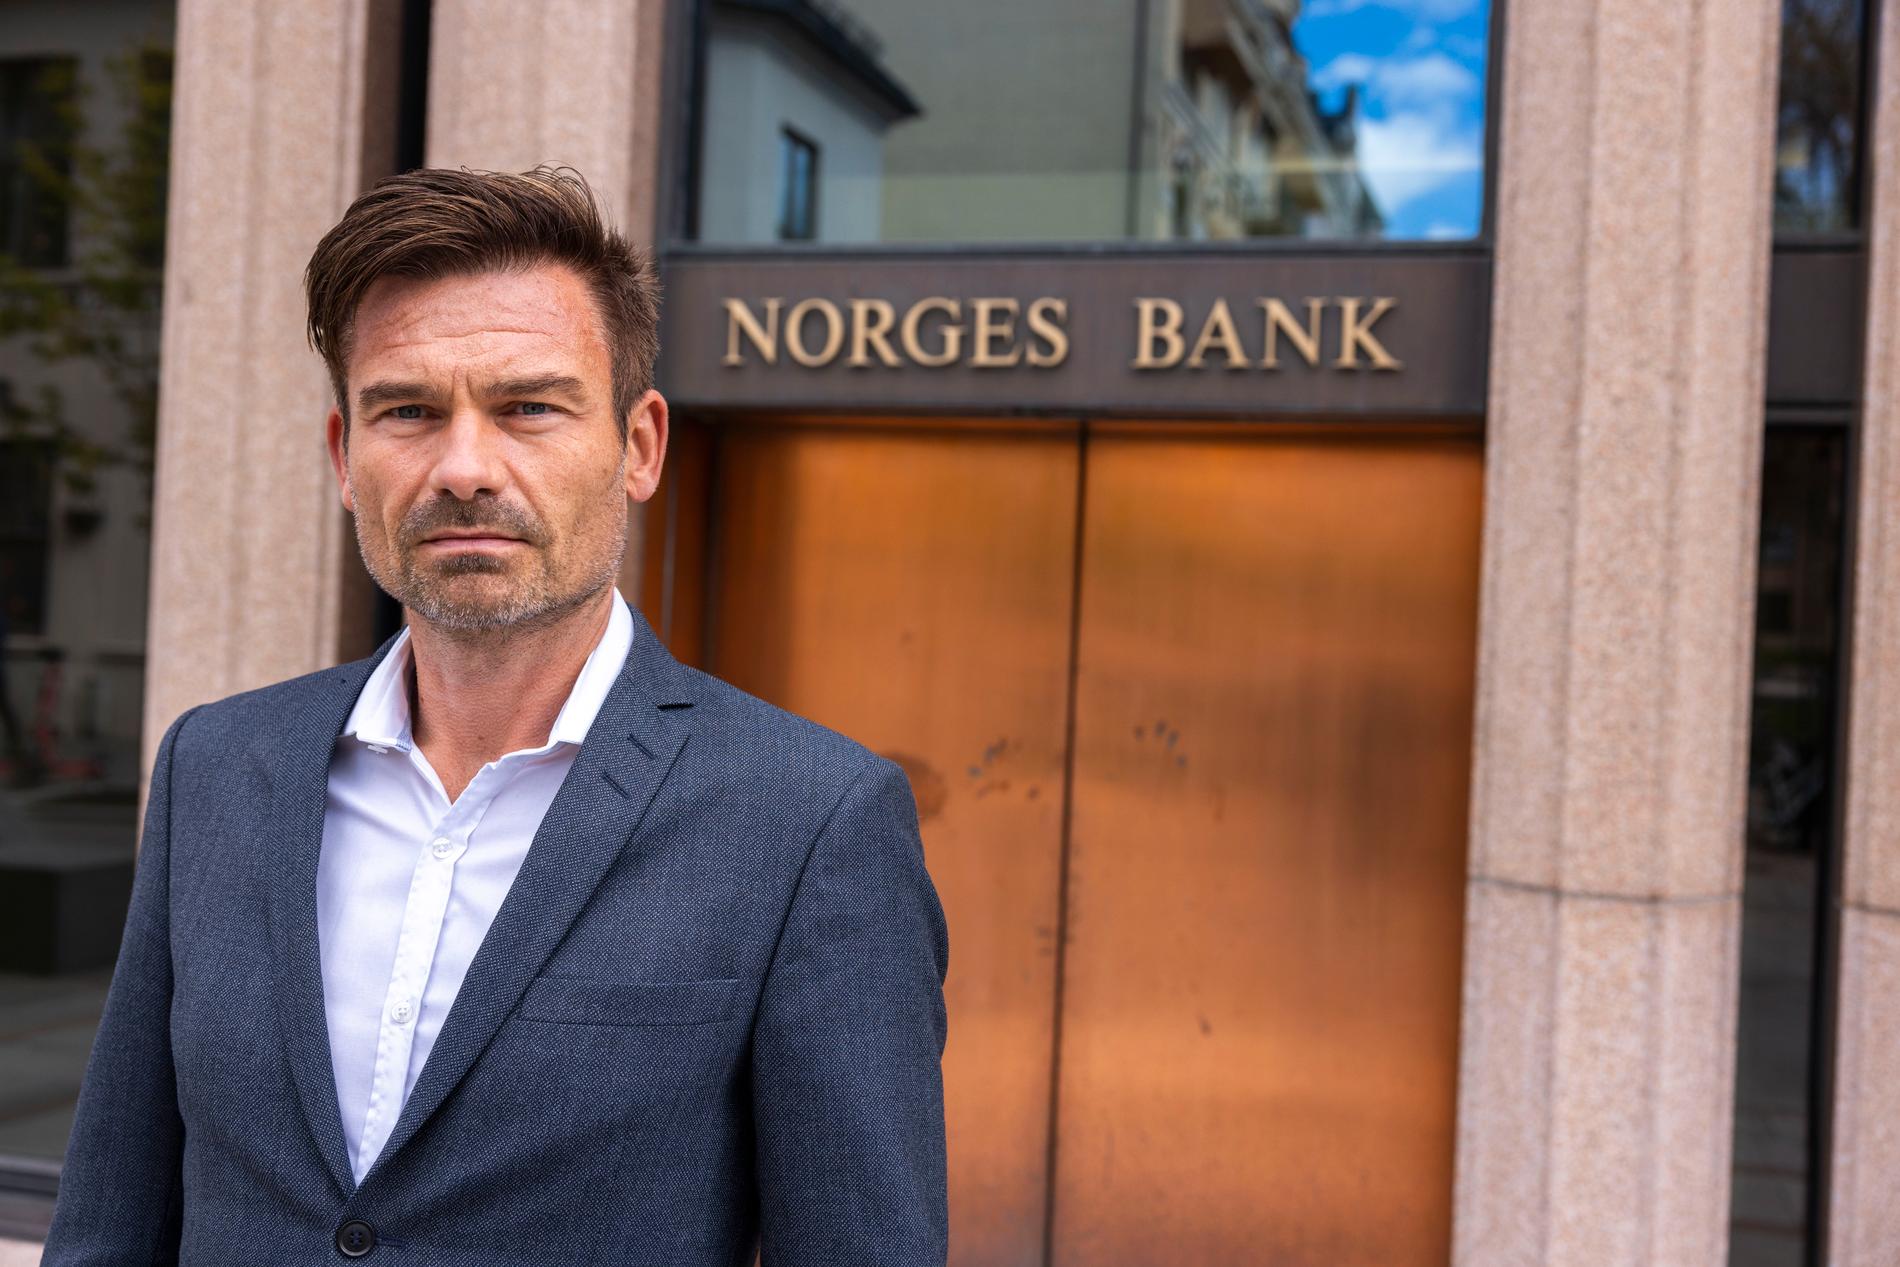  Sjeføkonom i LO, Roger Bjørnstad mener Norges Bank må være forsiktig og langsiktig med rentesettingen når inflasjonen kommer fra utlandet. 